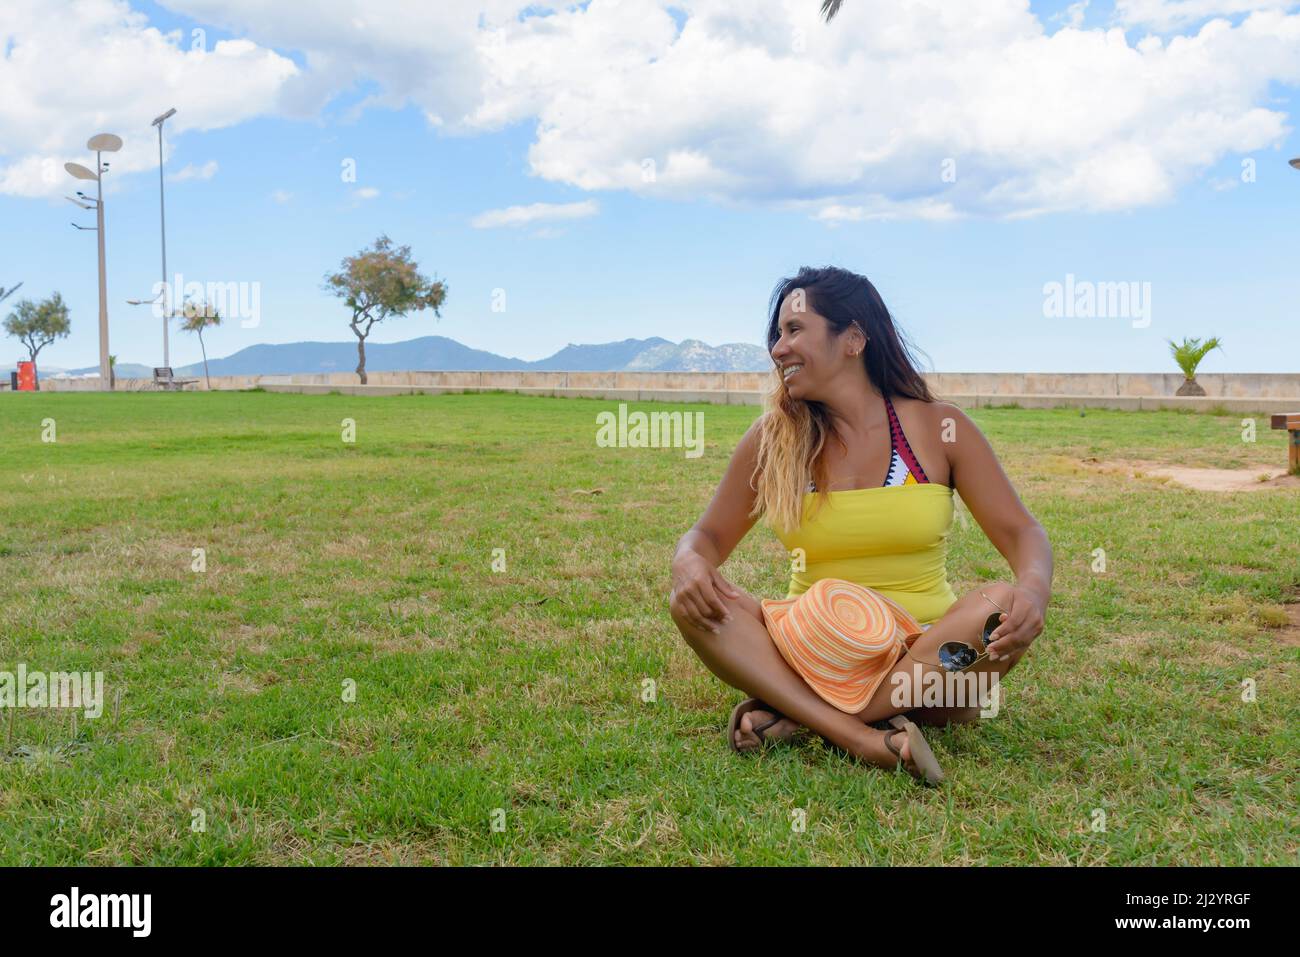 ritratto di una donna latina sorridente, divertendosi, in vacanza a maiorca in posa in una calda giornata estiva di primavera, sotto una palma, concetto di vacanza Foto Stock